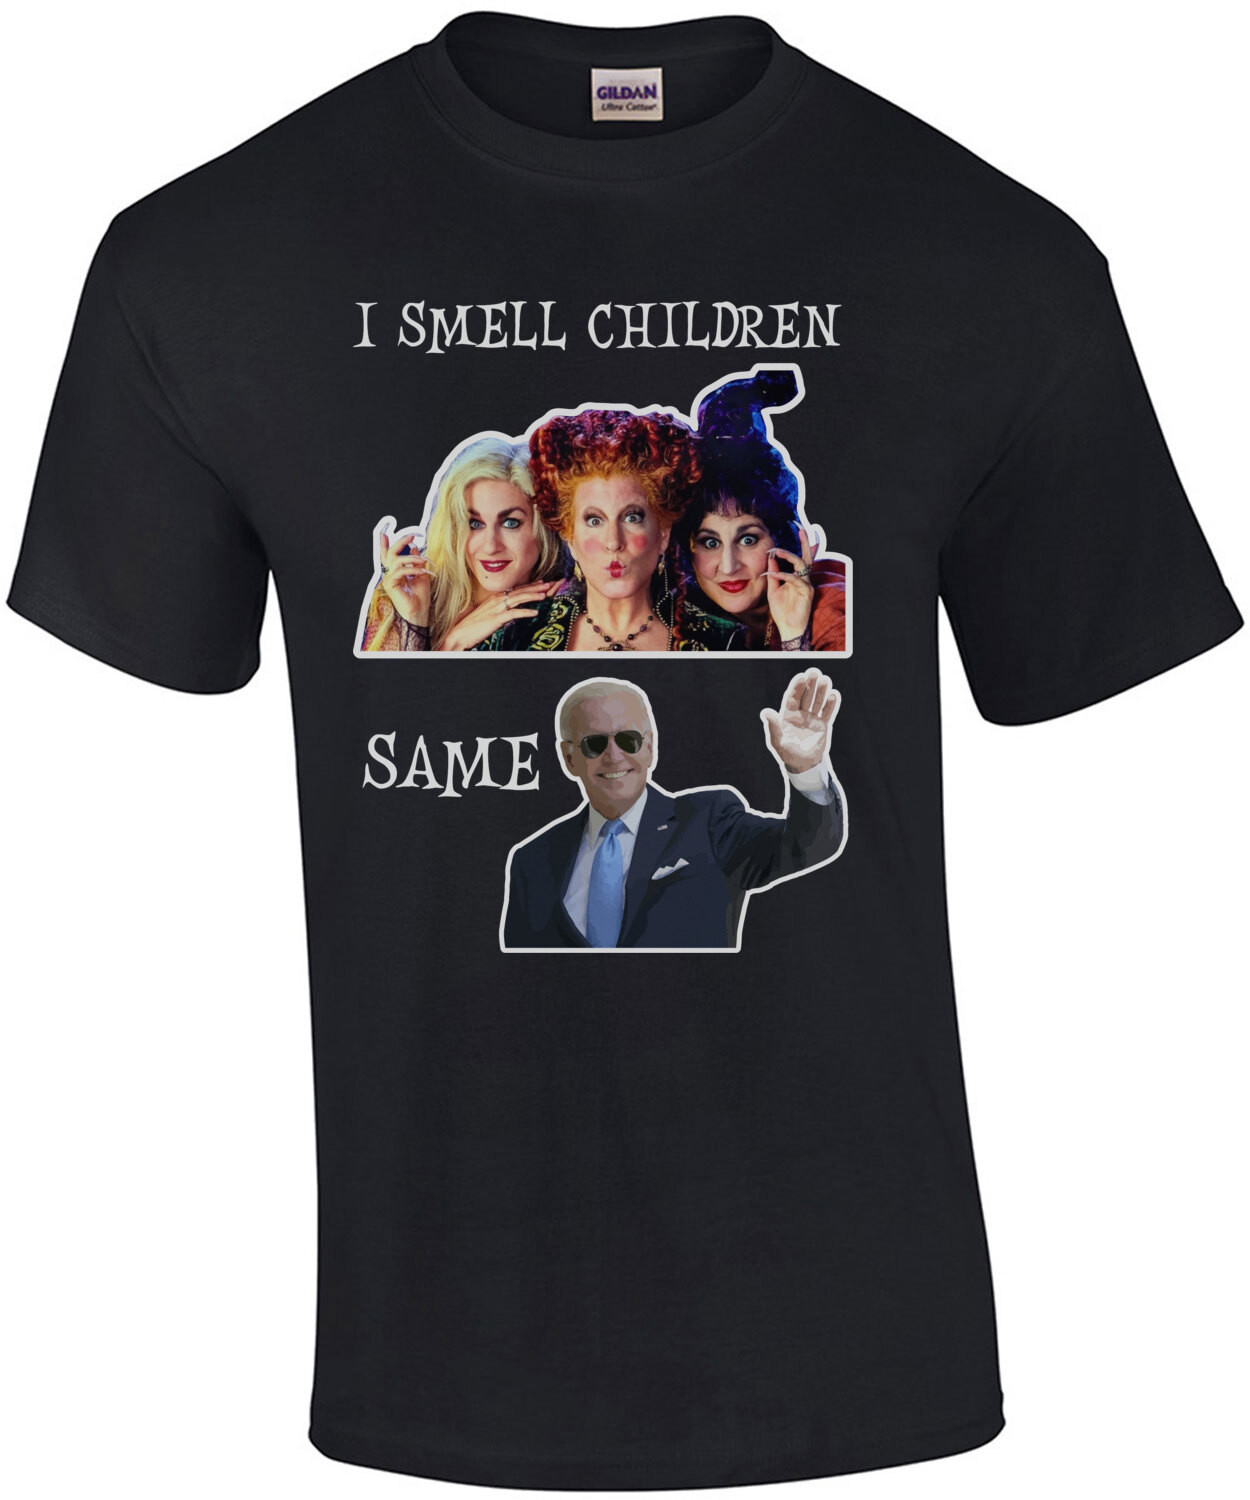 I smell children - Joe Biden - Hocus Pocus - Halloween T-Shirt